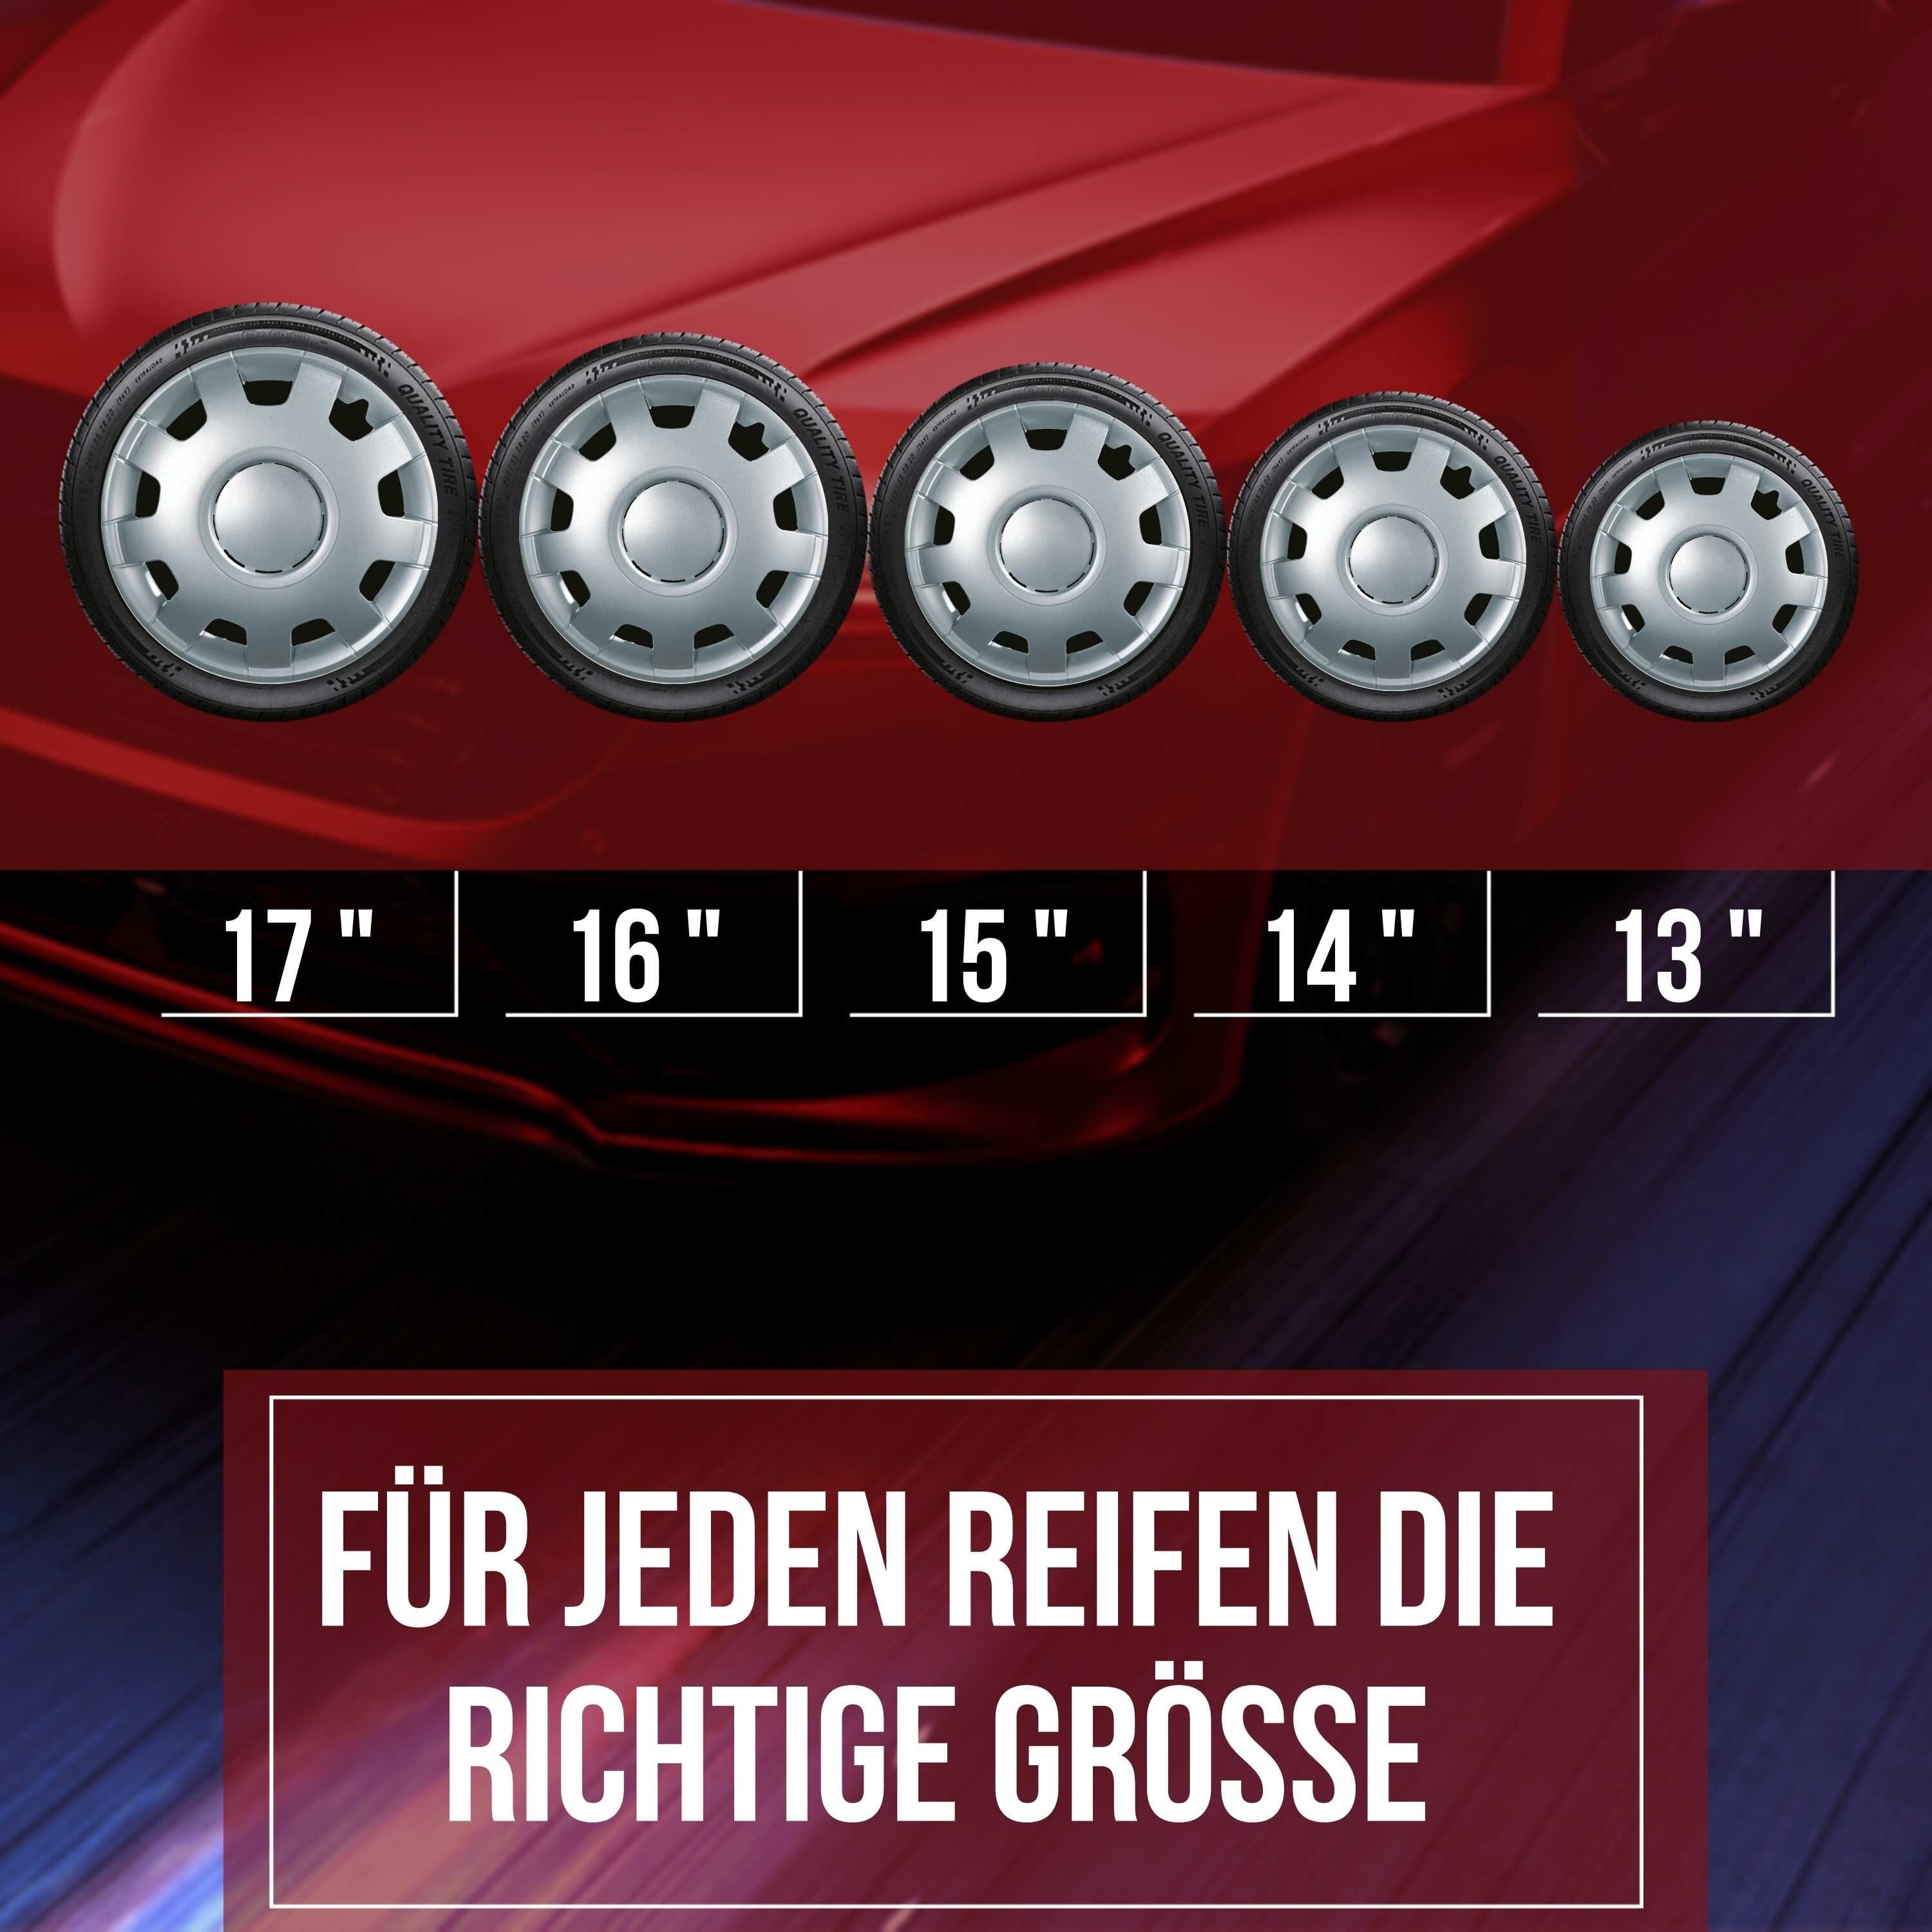 Radkappen silber - 4 Stück Alfa Radzierblenden für Stahlfelgen 13-16 Zoll Fahrzeuge & Teile KuGlo Auto-Räder-Freizeitzubehör GmbH 